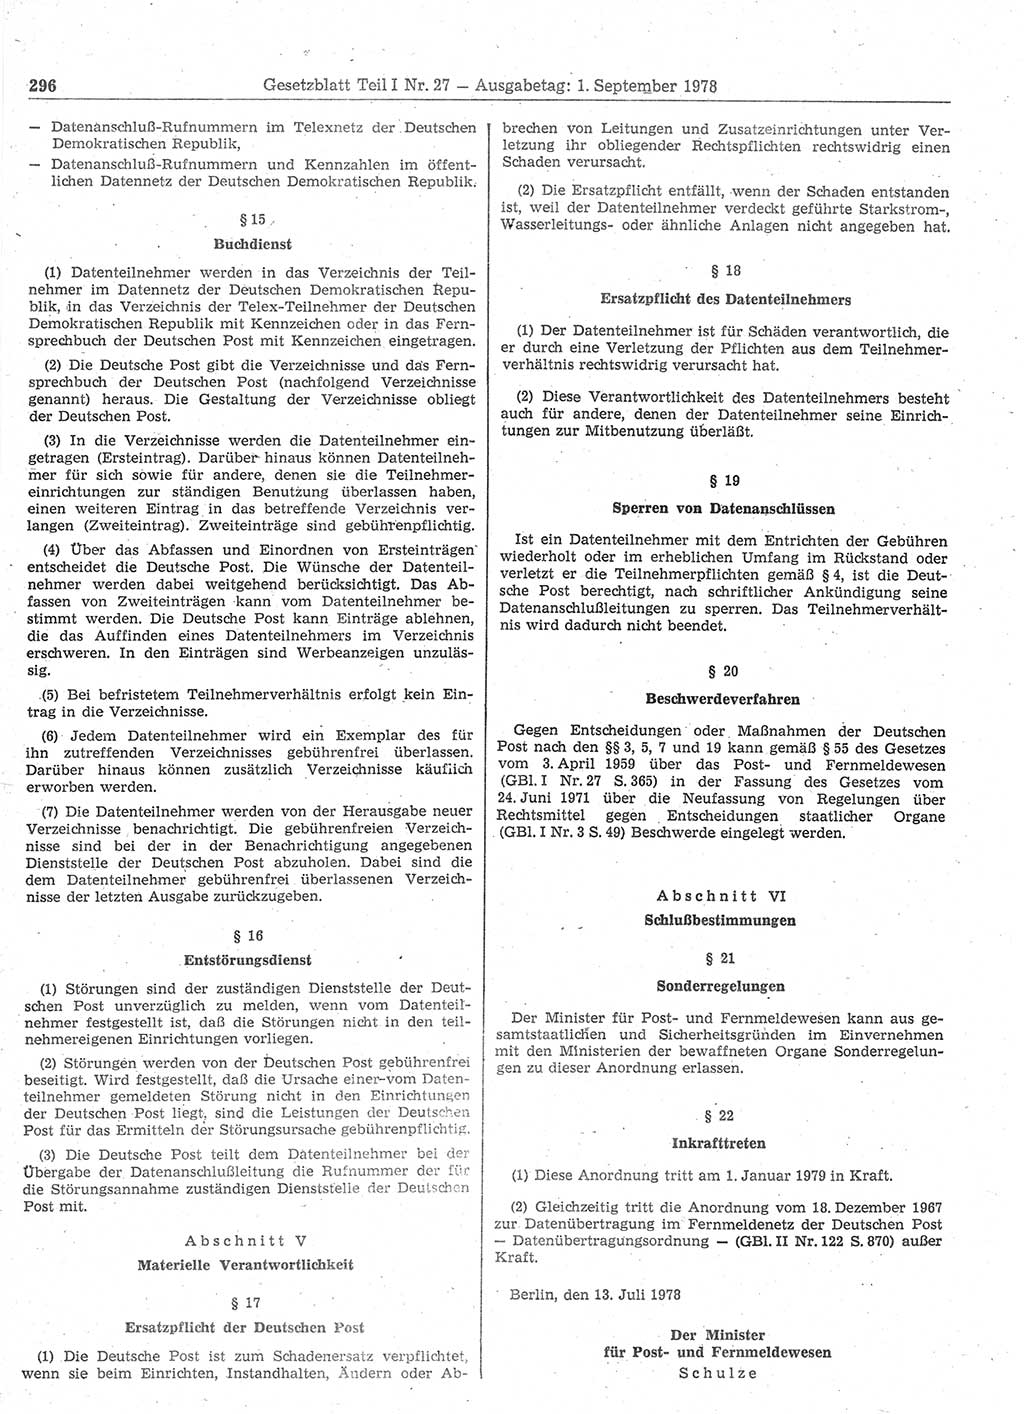 Gesetzblatt (GBl.) der Deutschen Demokratischen Republik (DDR) Teil Ⅰ 1978, Seite 296 (GBl. DDR Ⅰ 1978, S. 296)